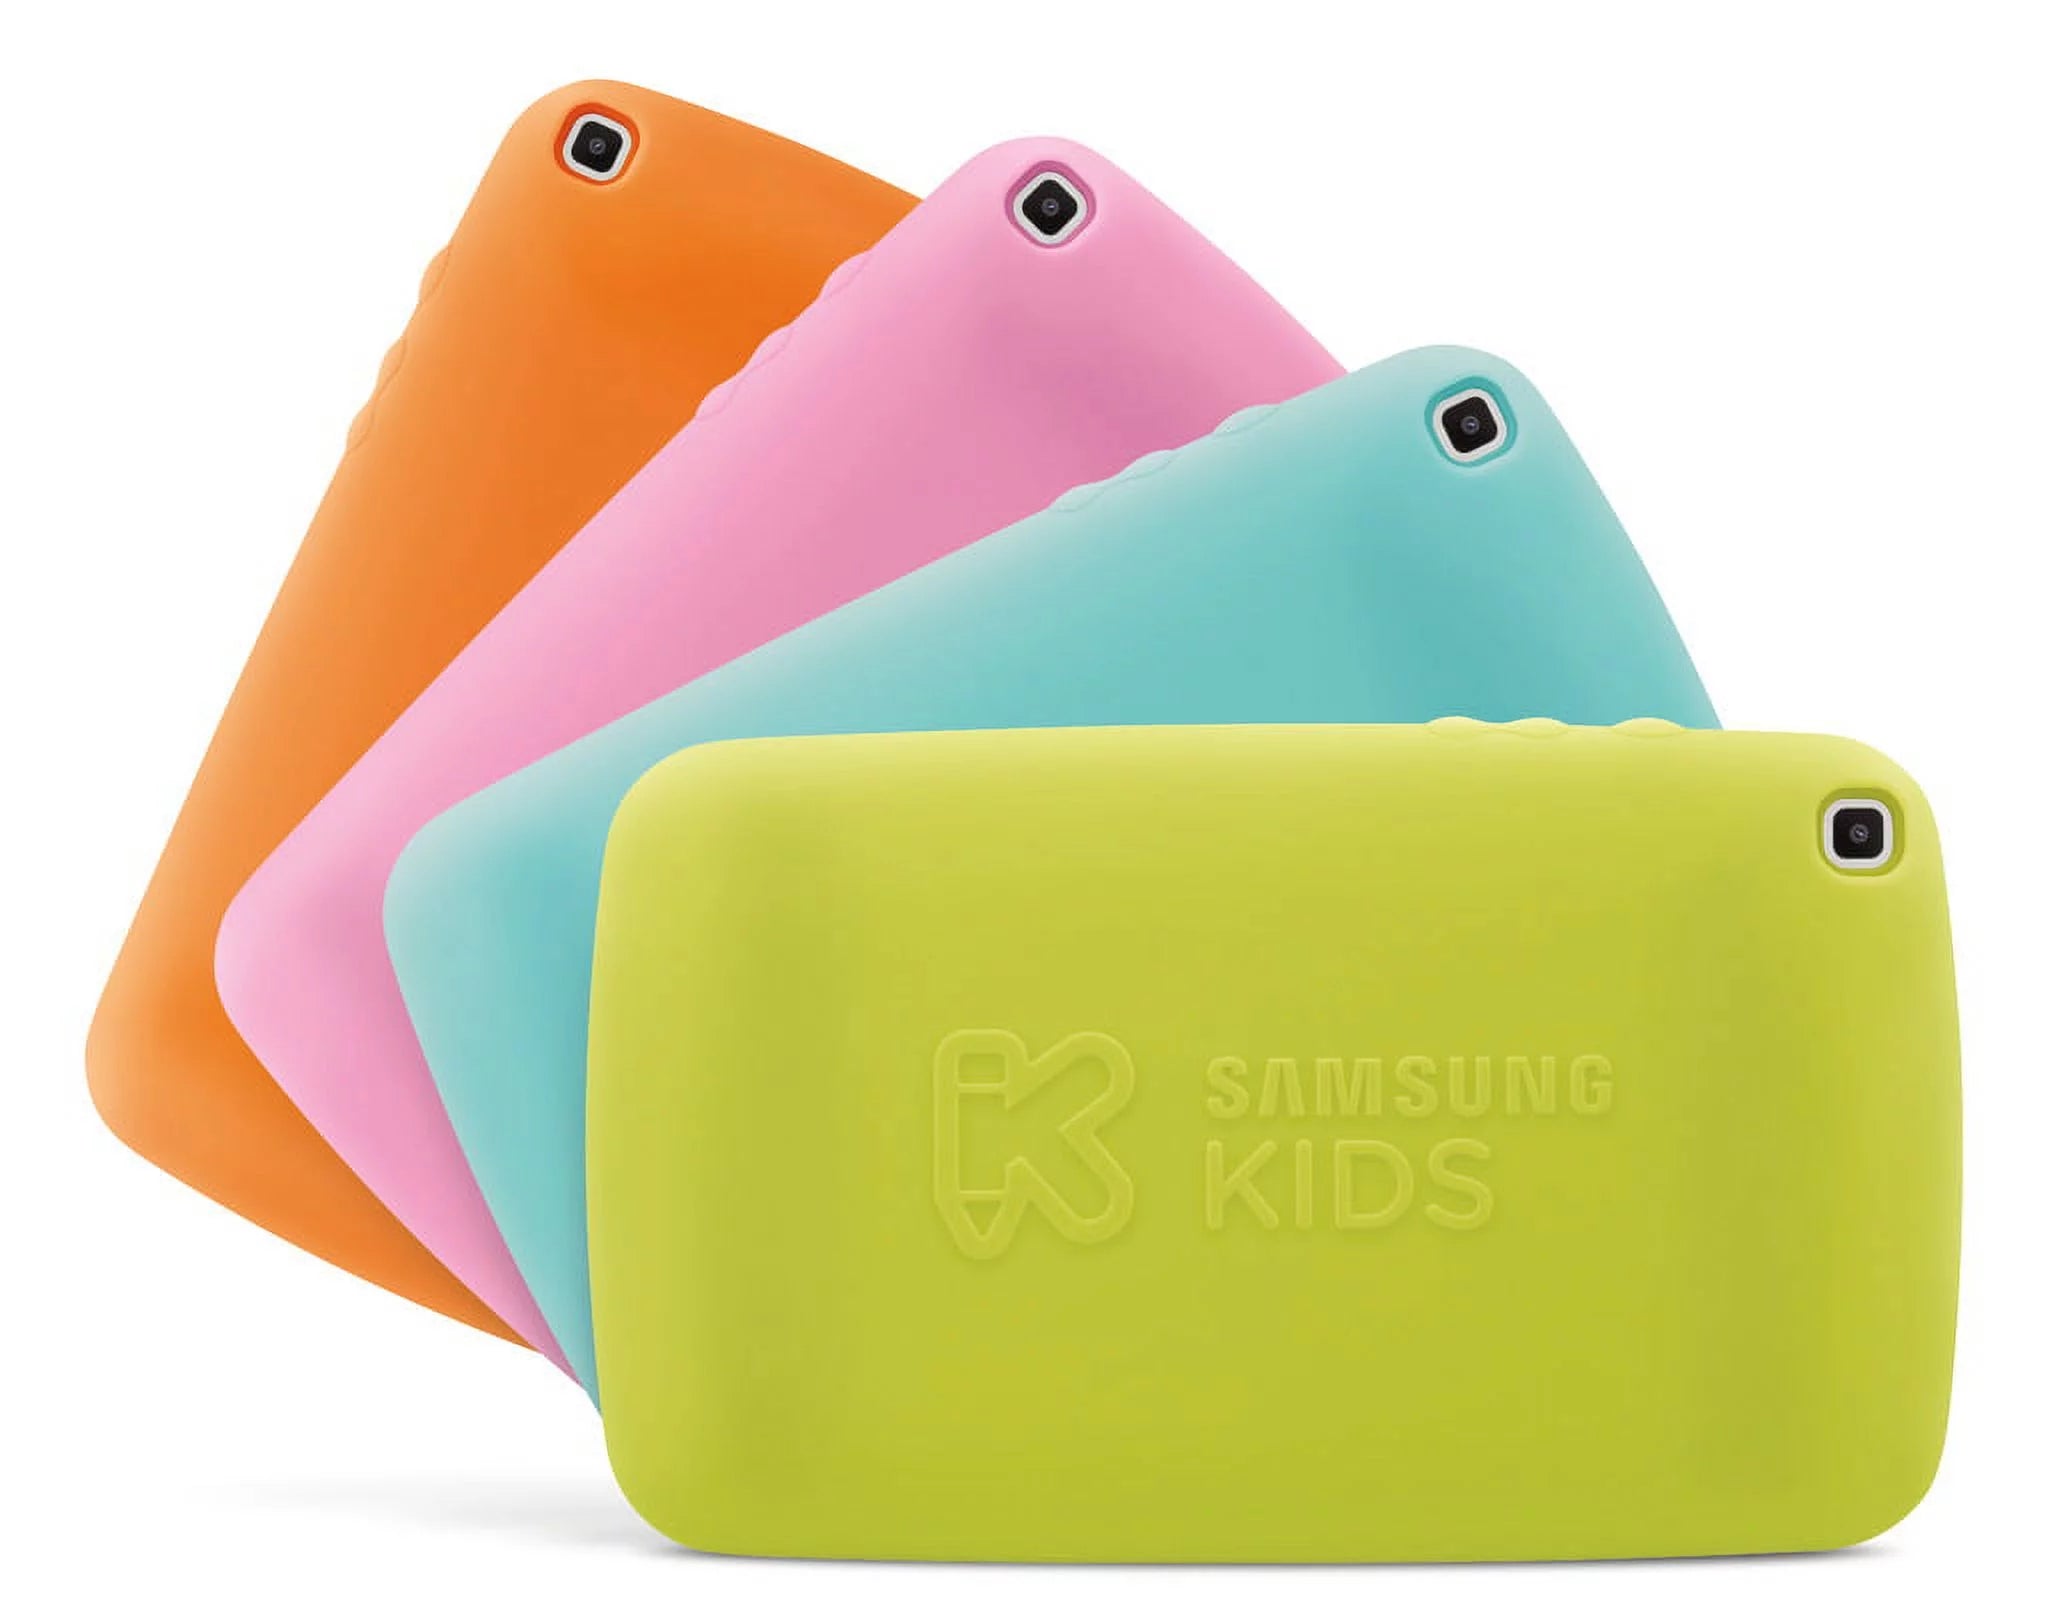 Samsung - Galaxy Tab A Kids Edition - 8" - 32GB - Silver - SM-T290NZSKXAR